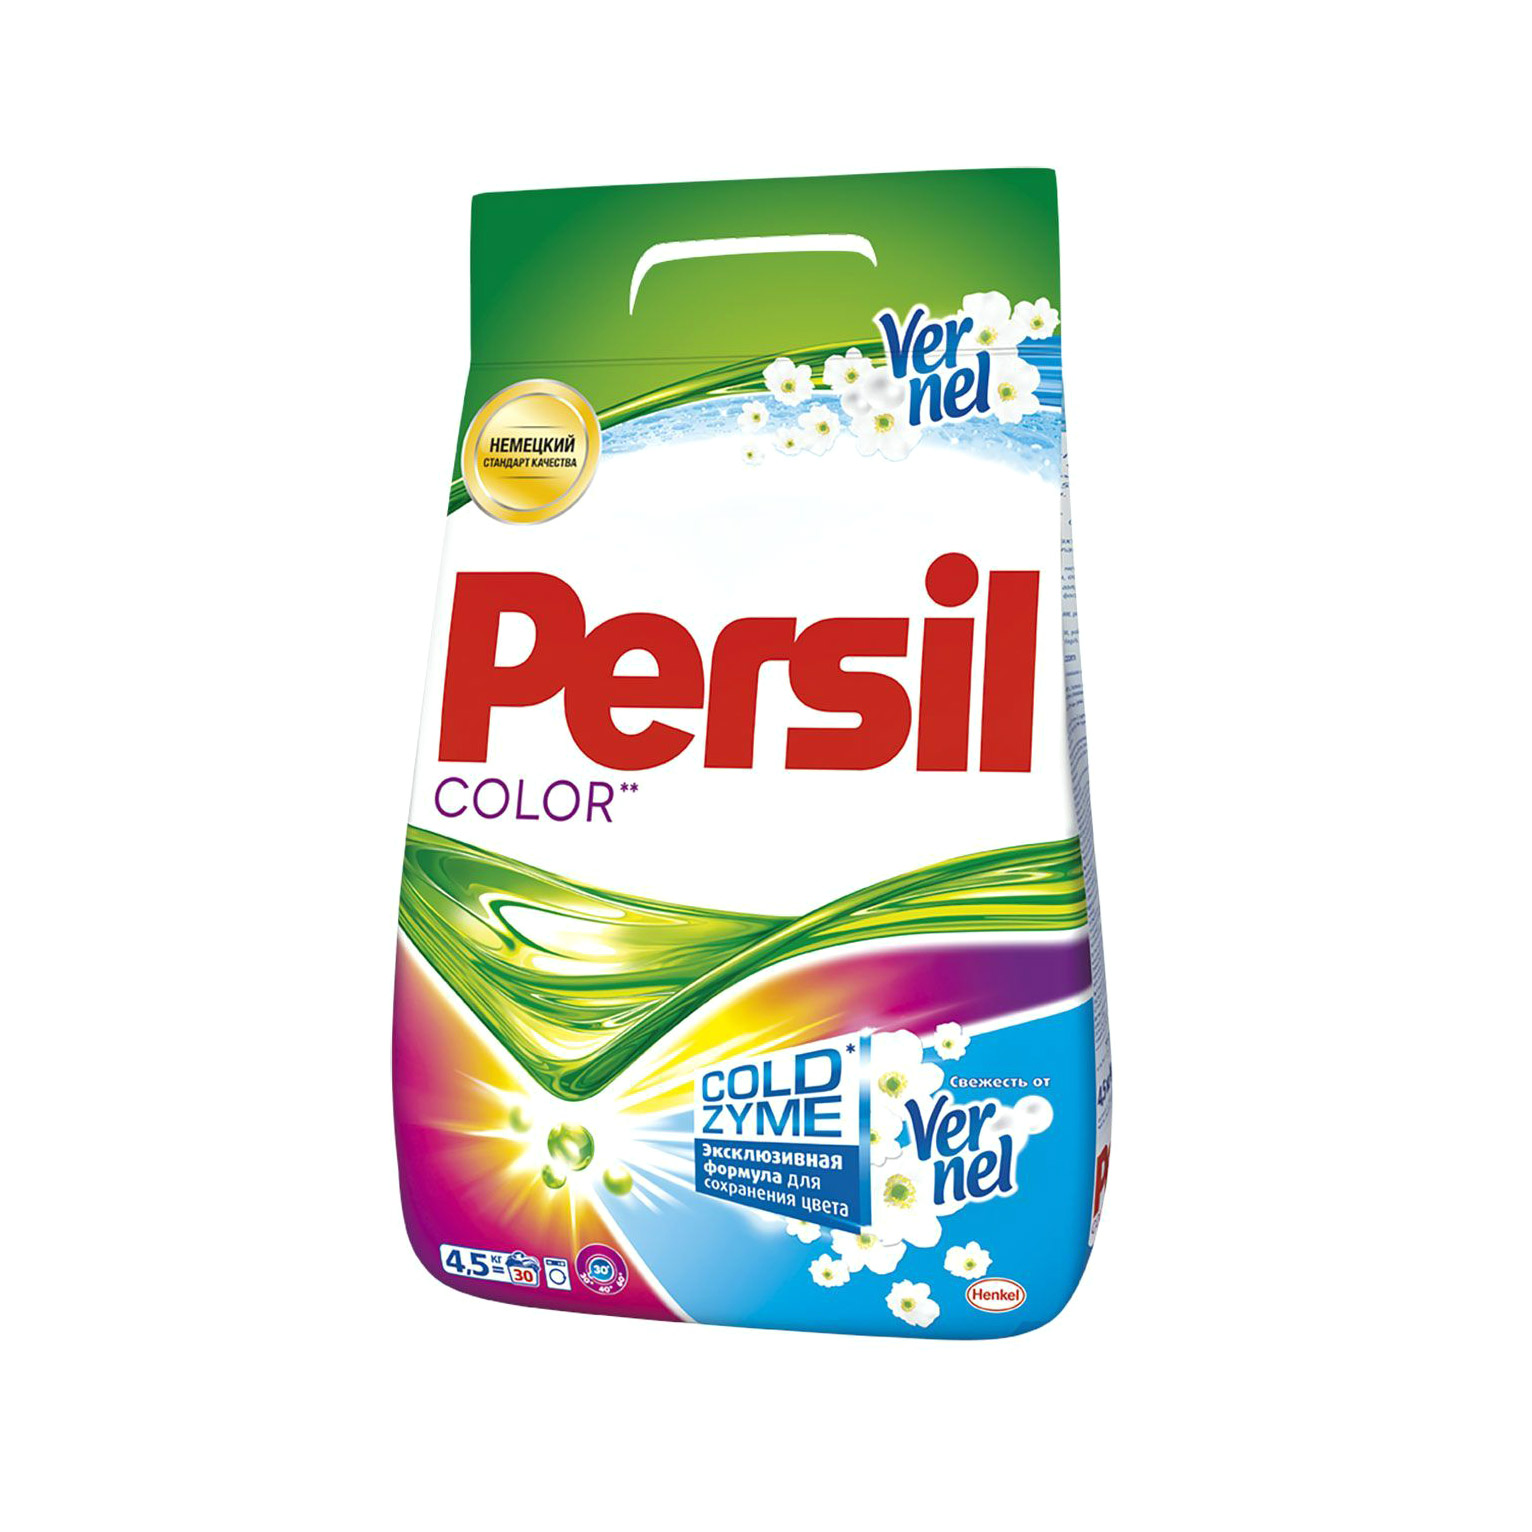 Стиральный порошок Persil Color свежесть Vernel 4.5 кг стиральный порошок persil